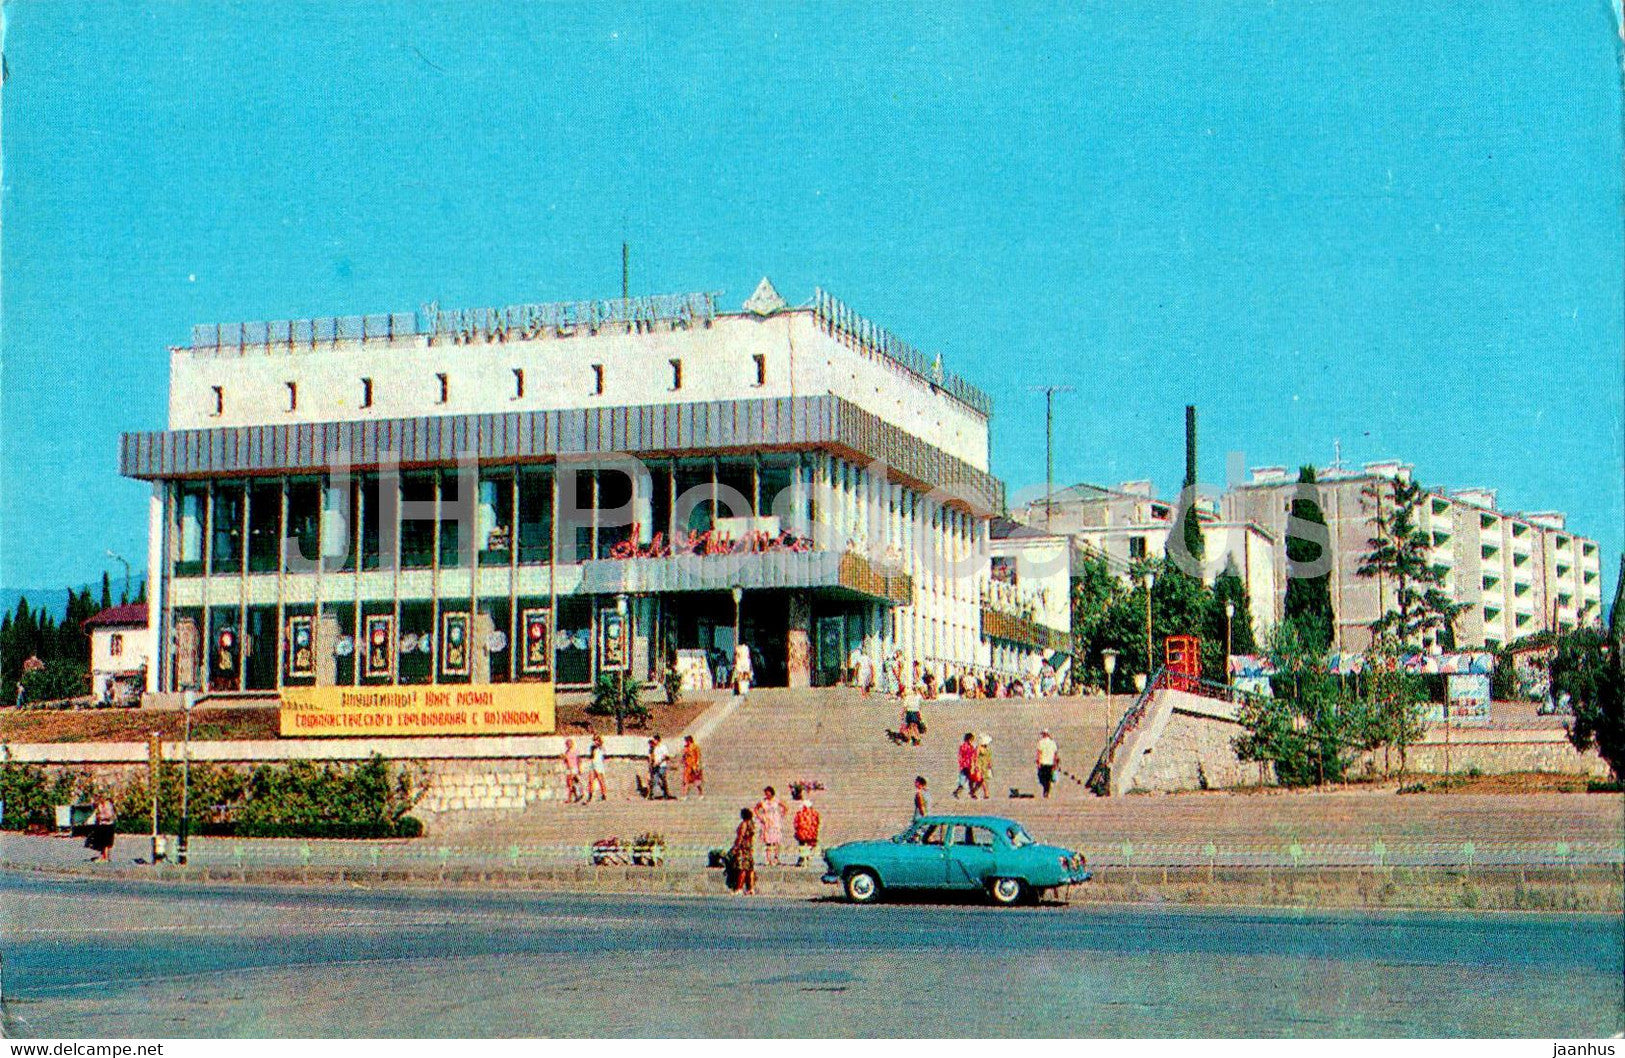 Alushta - Department store Alushta - car Volga - 1976 - Ukraine USSR - unused - JH Postcards